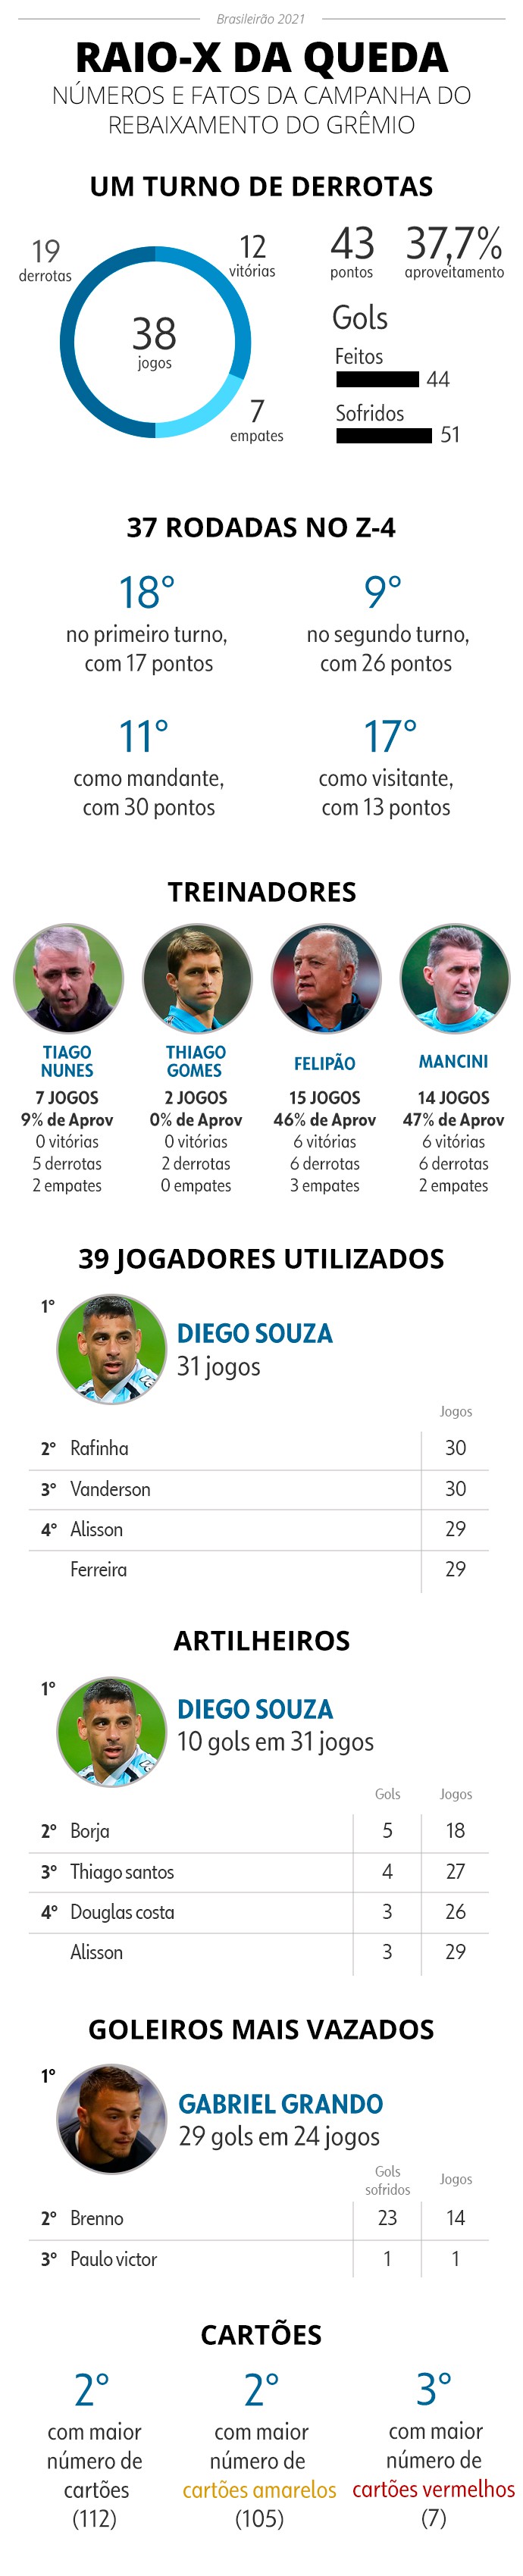 Info Grêmio rebaixado - Infoesporte